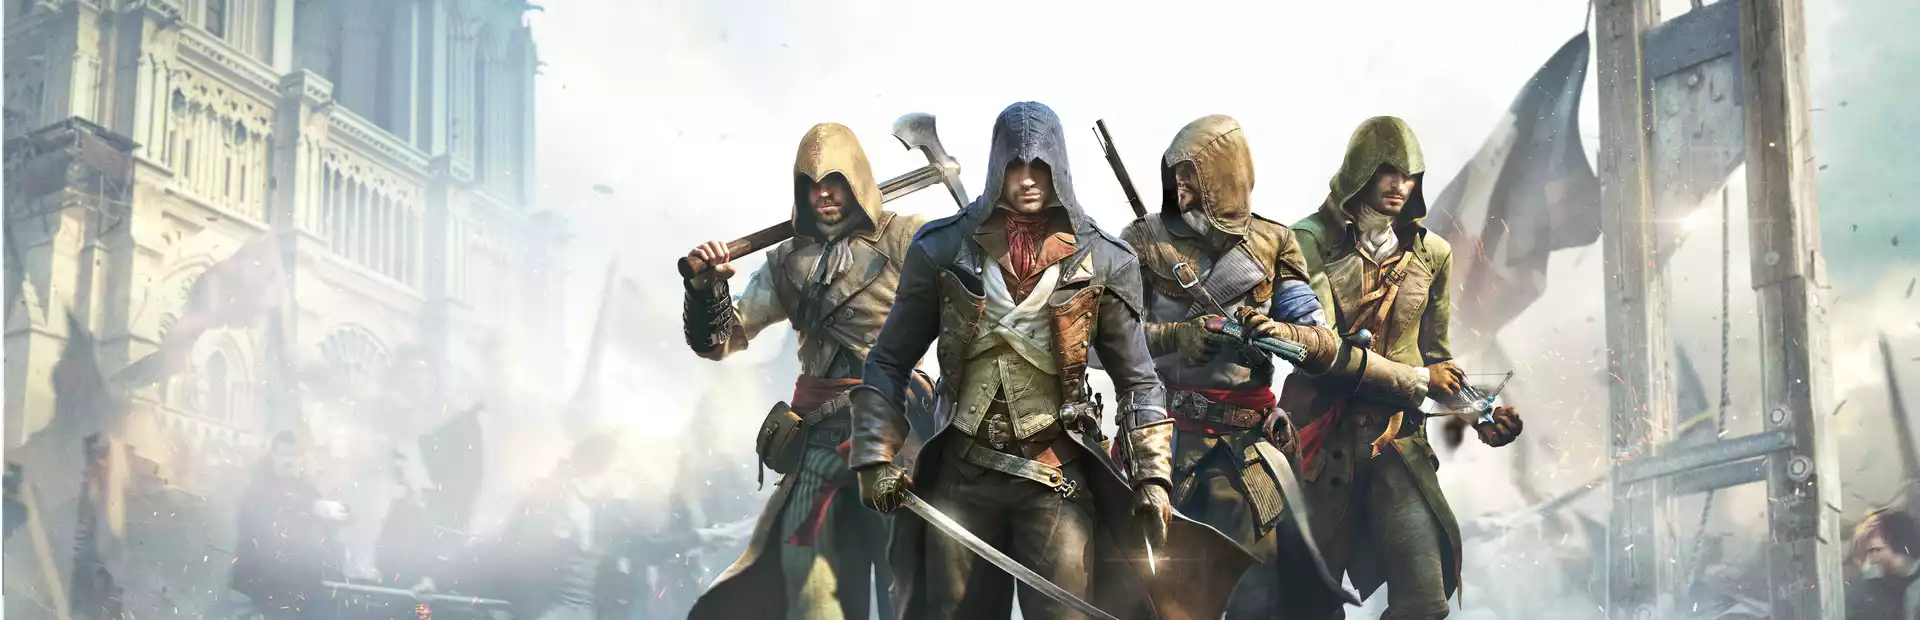 Assassin's Creed Unity Uplay Key China